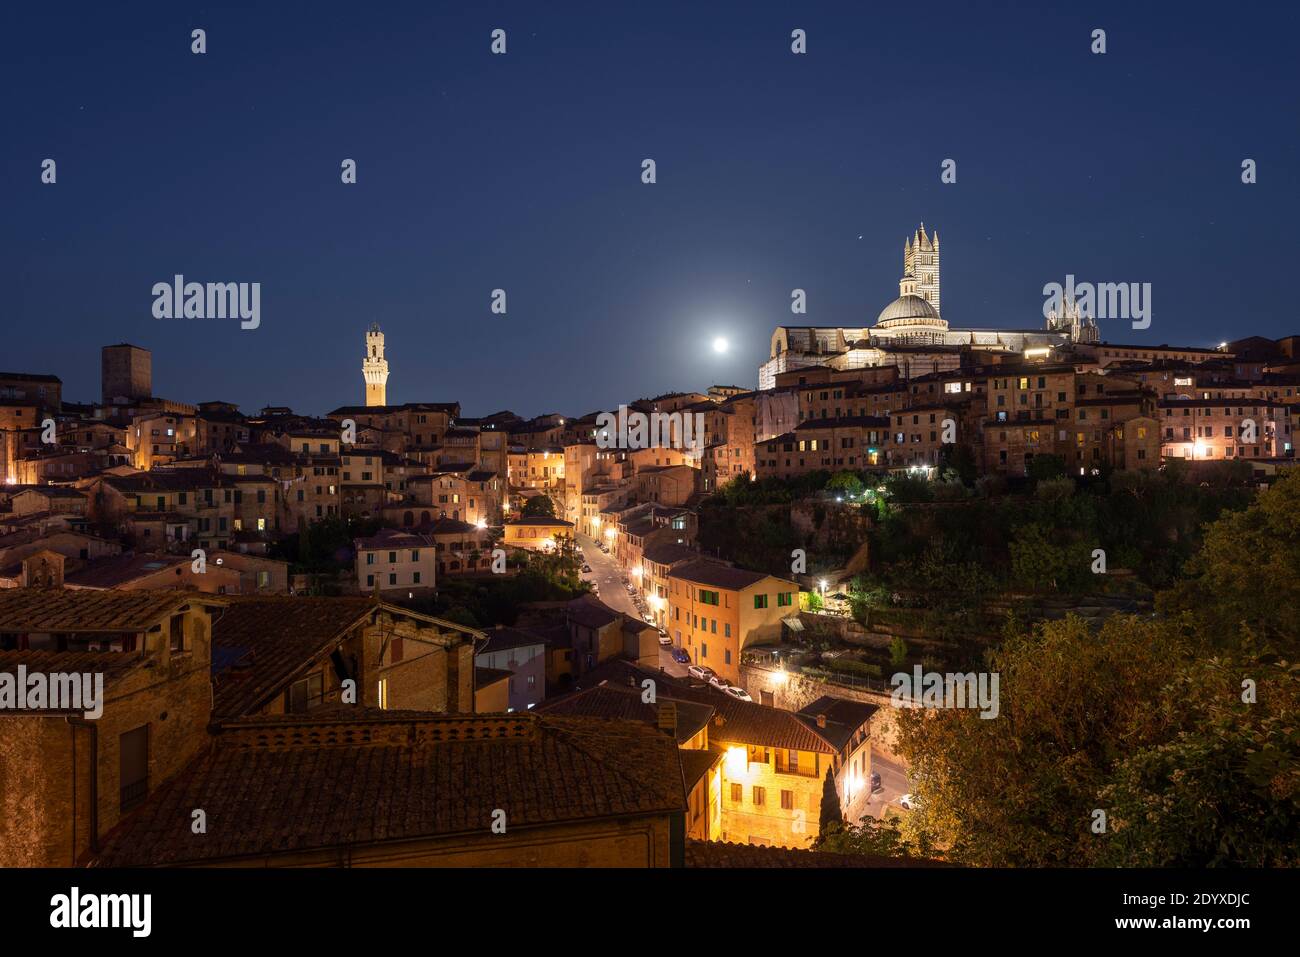 Pleine lune sur une allée illuminée et le panorama de la vieille ville médiévale de Sienne avec la cathédrale, tour de l'horloge de la mairie, Toscane, Italie Banque D'Images